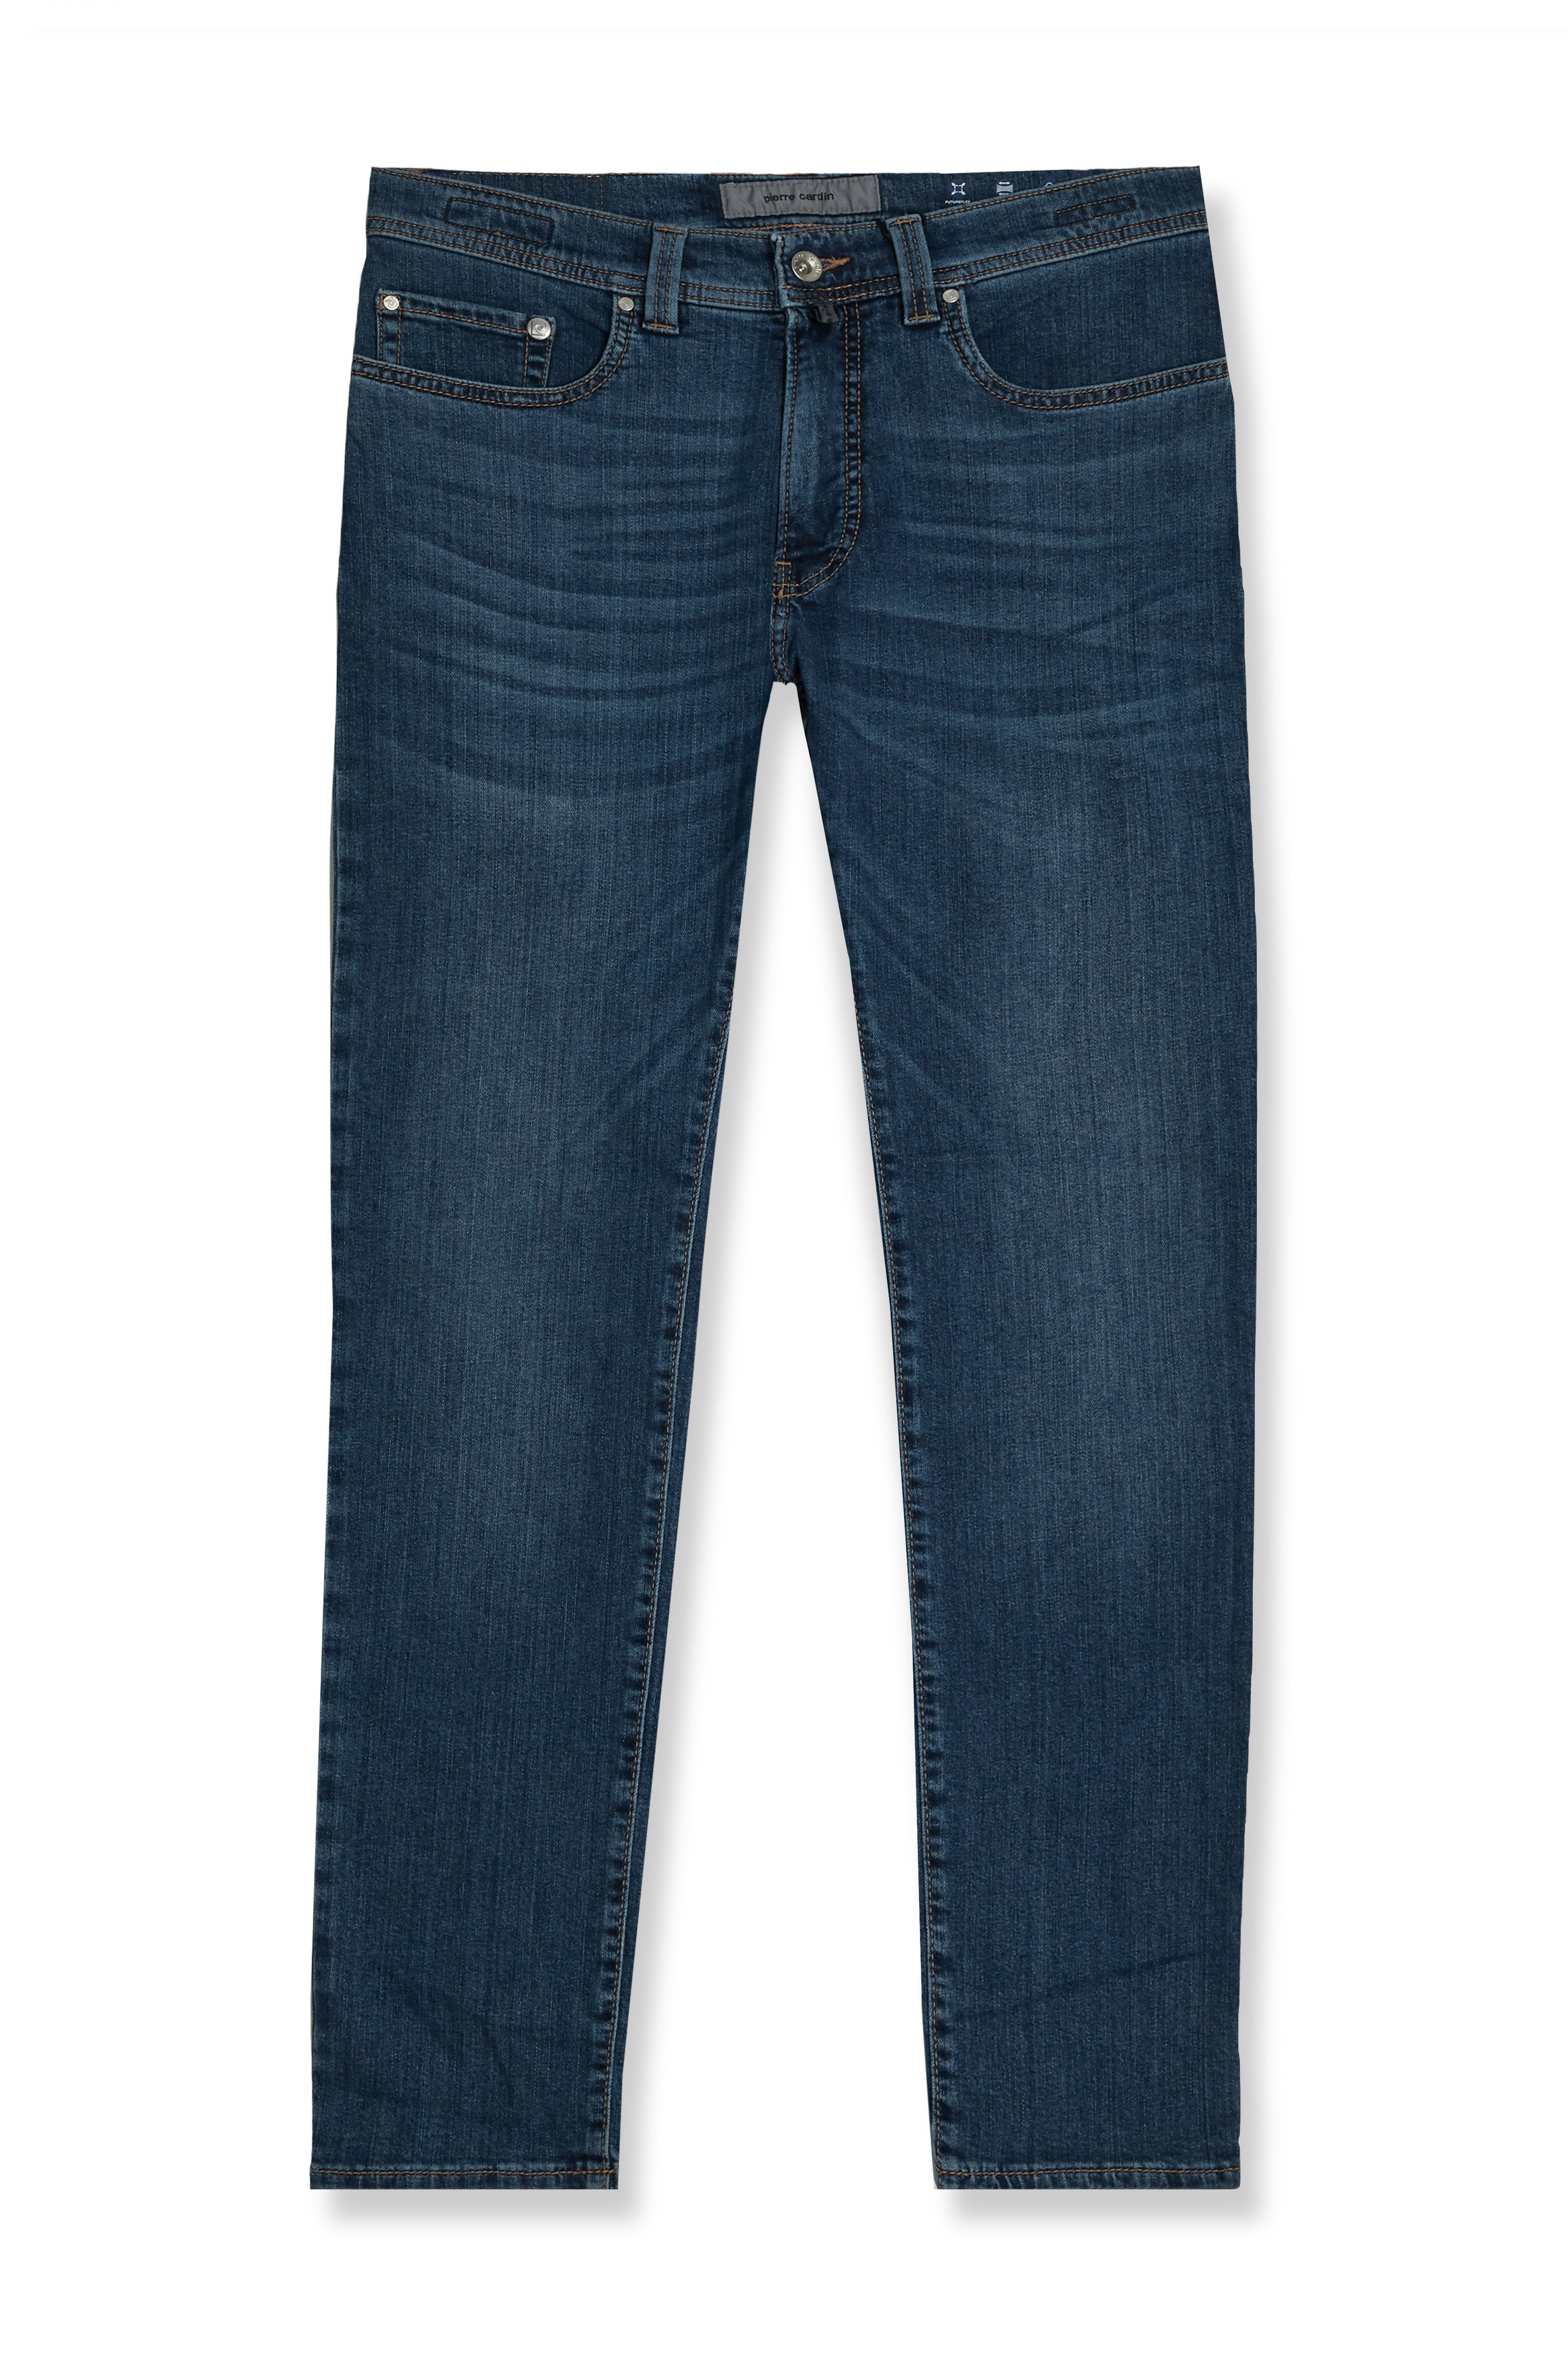 Futureflex - Jeans Pierre Cardin 5-Pocket-Jeans Cardin Pierre blau (1-tlg) Herren Lyon